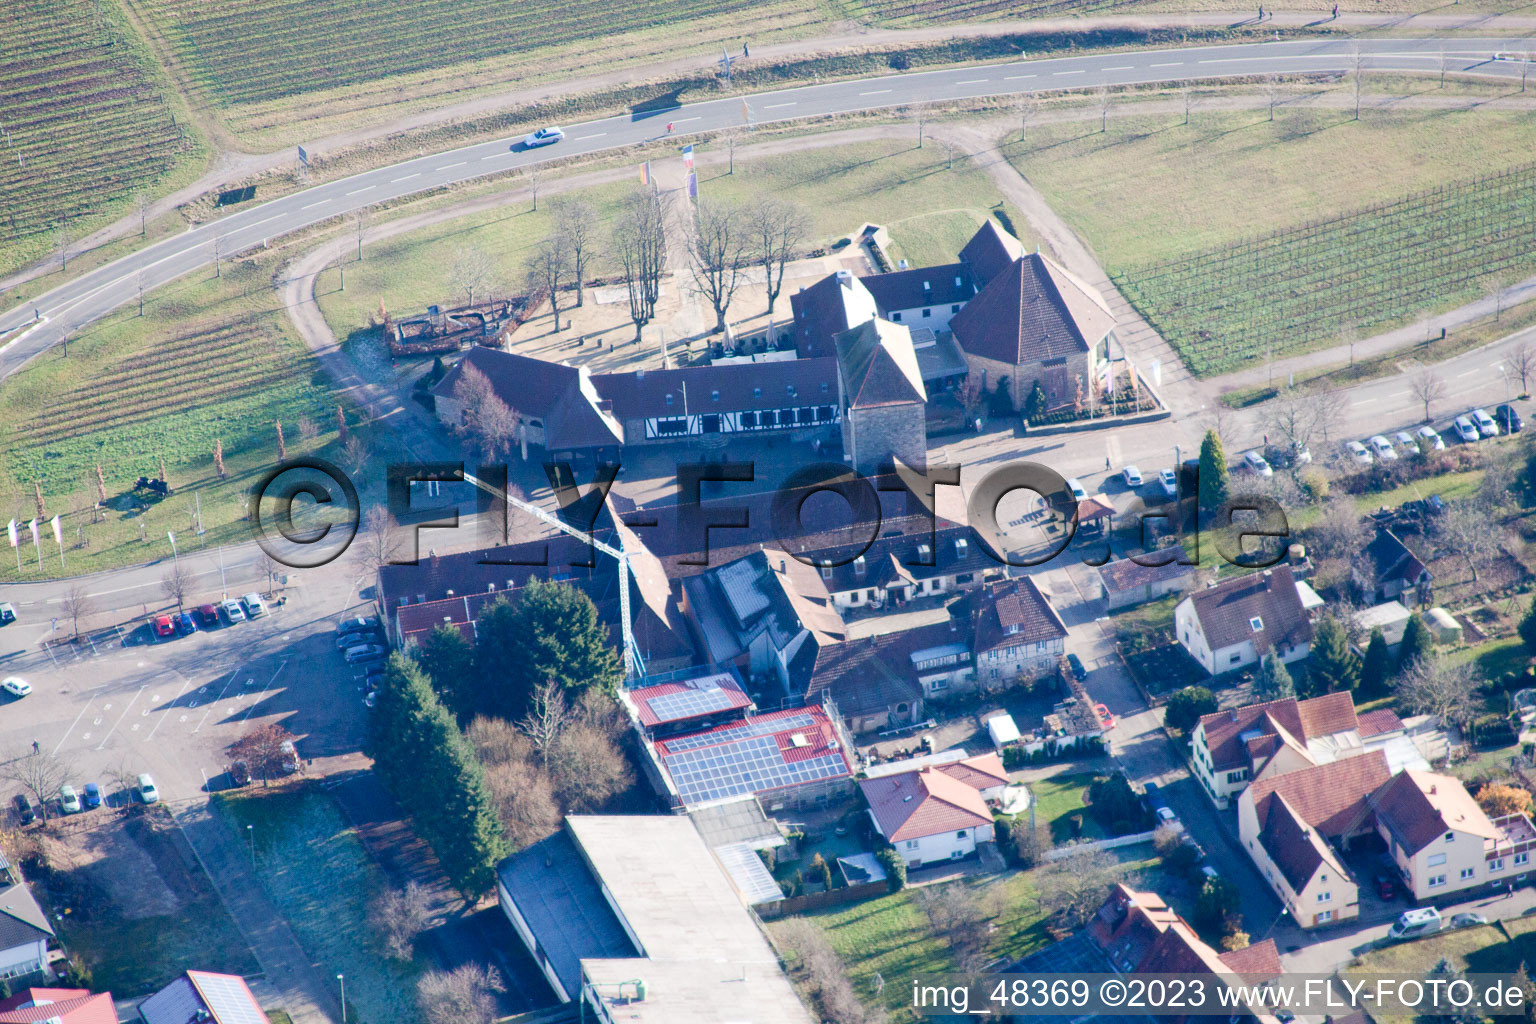 District Schweigen in Schweigen-Rechtenbach in the state Rhineland-Palatinate, Germany from the drone perspective